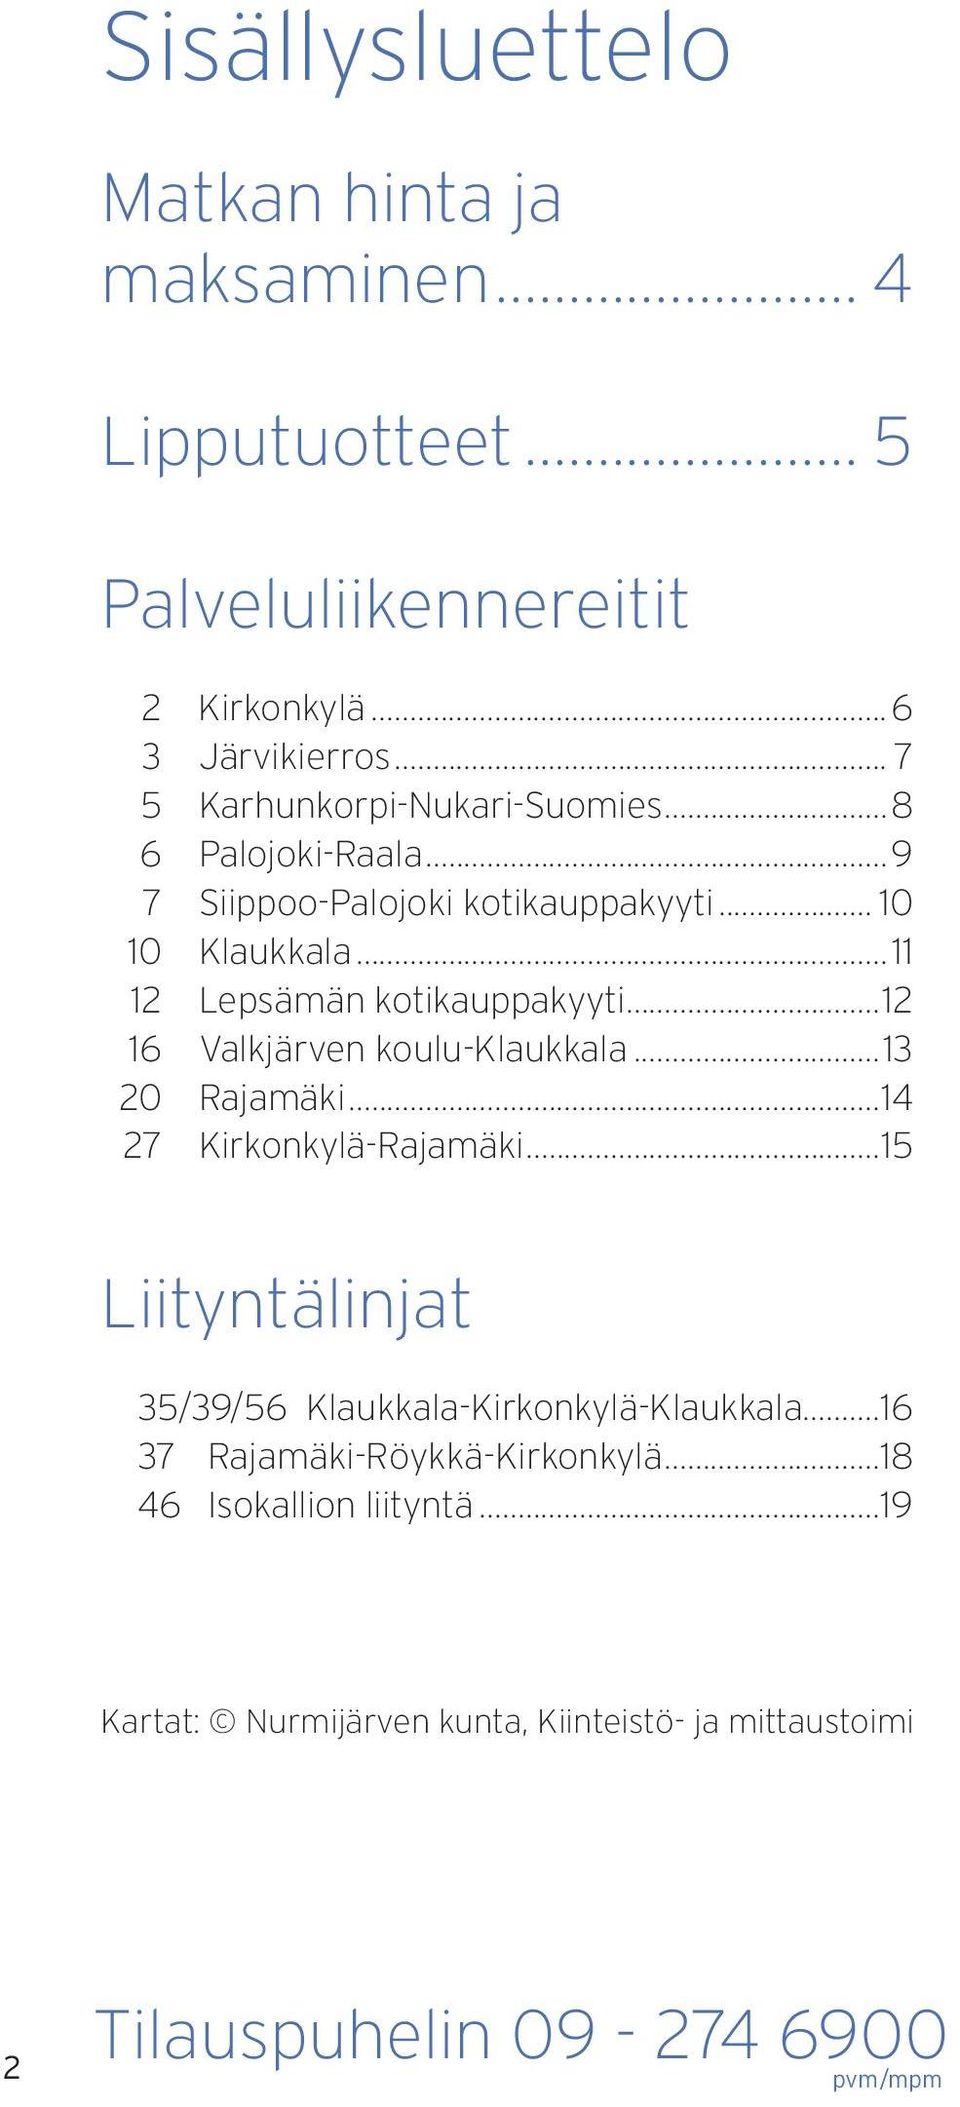 ..11 12 Lepsämän kotikauppakyyti...12 16 Valkjärven koulu...13 20 Rajamäki...14 27 Rajamäki...15 Liityntälinjat 35/39/56.